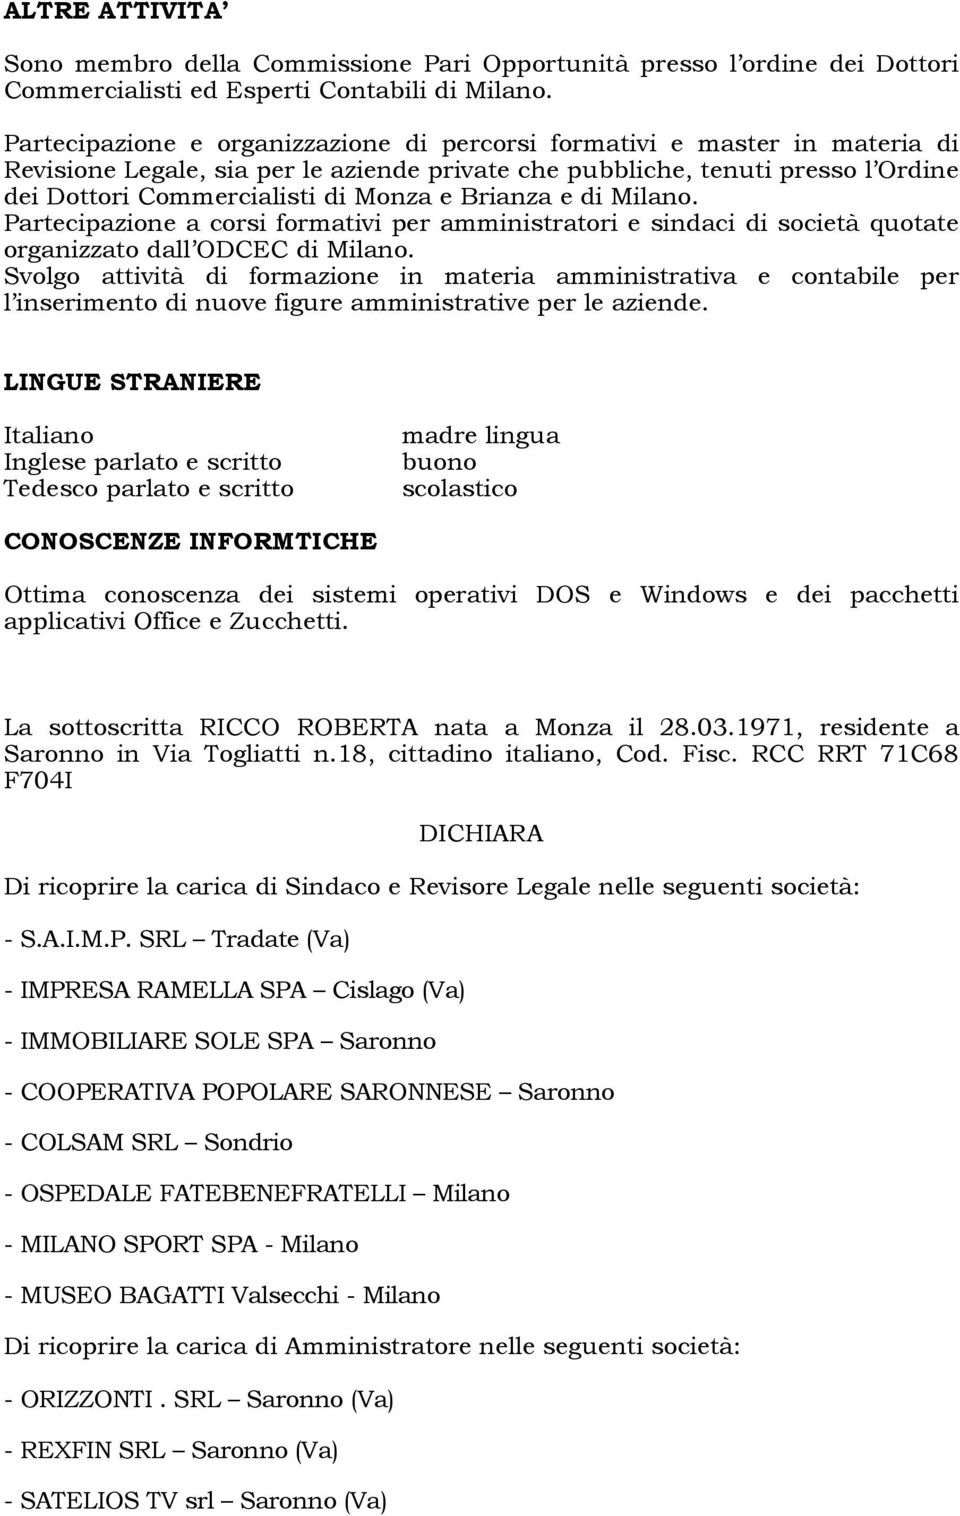 Brianza e di Milano. Partecipazione a corsi formativi per amministratori e sindaci di società quotate organizzato dall ODCEC di Milano.